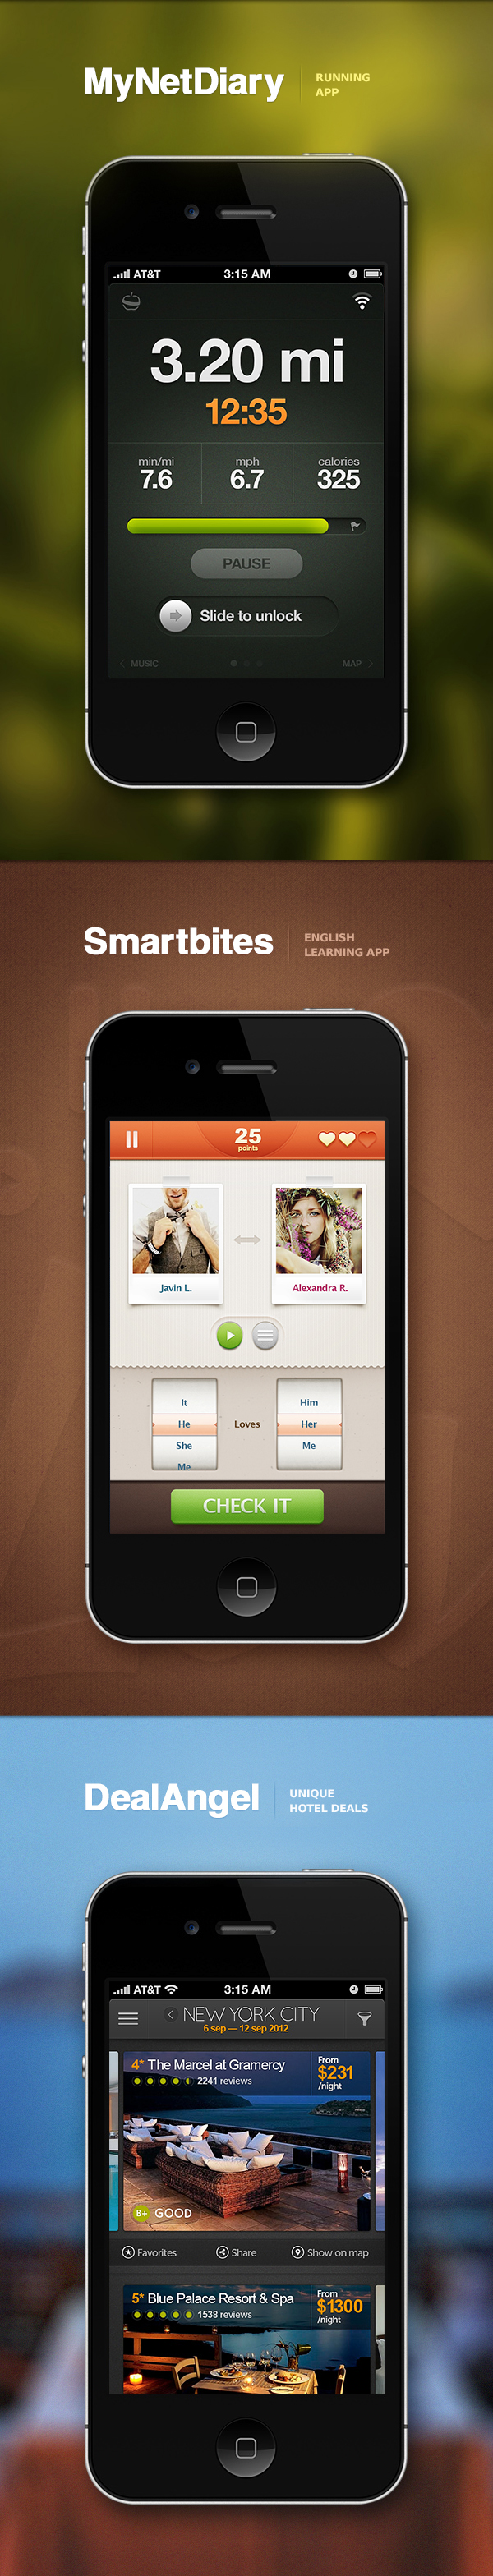 design UI Interface ios app iphone stats flat button navigation metro menu